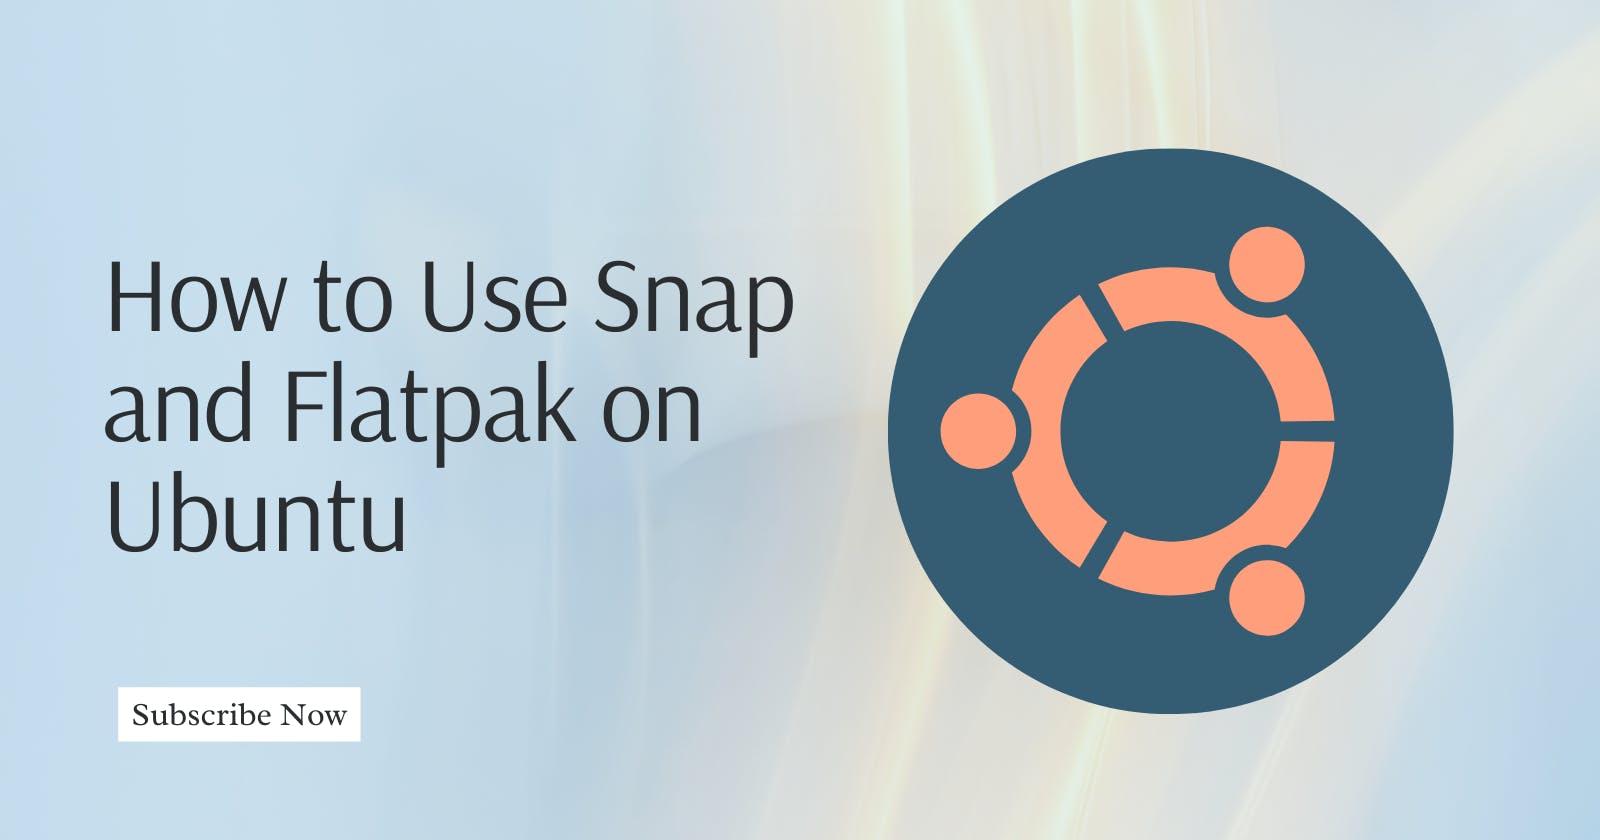 How to Use Snap and Flatpak on Ubuntu